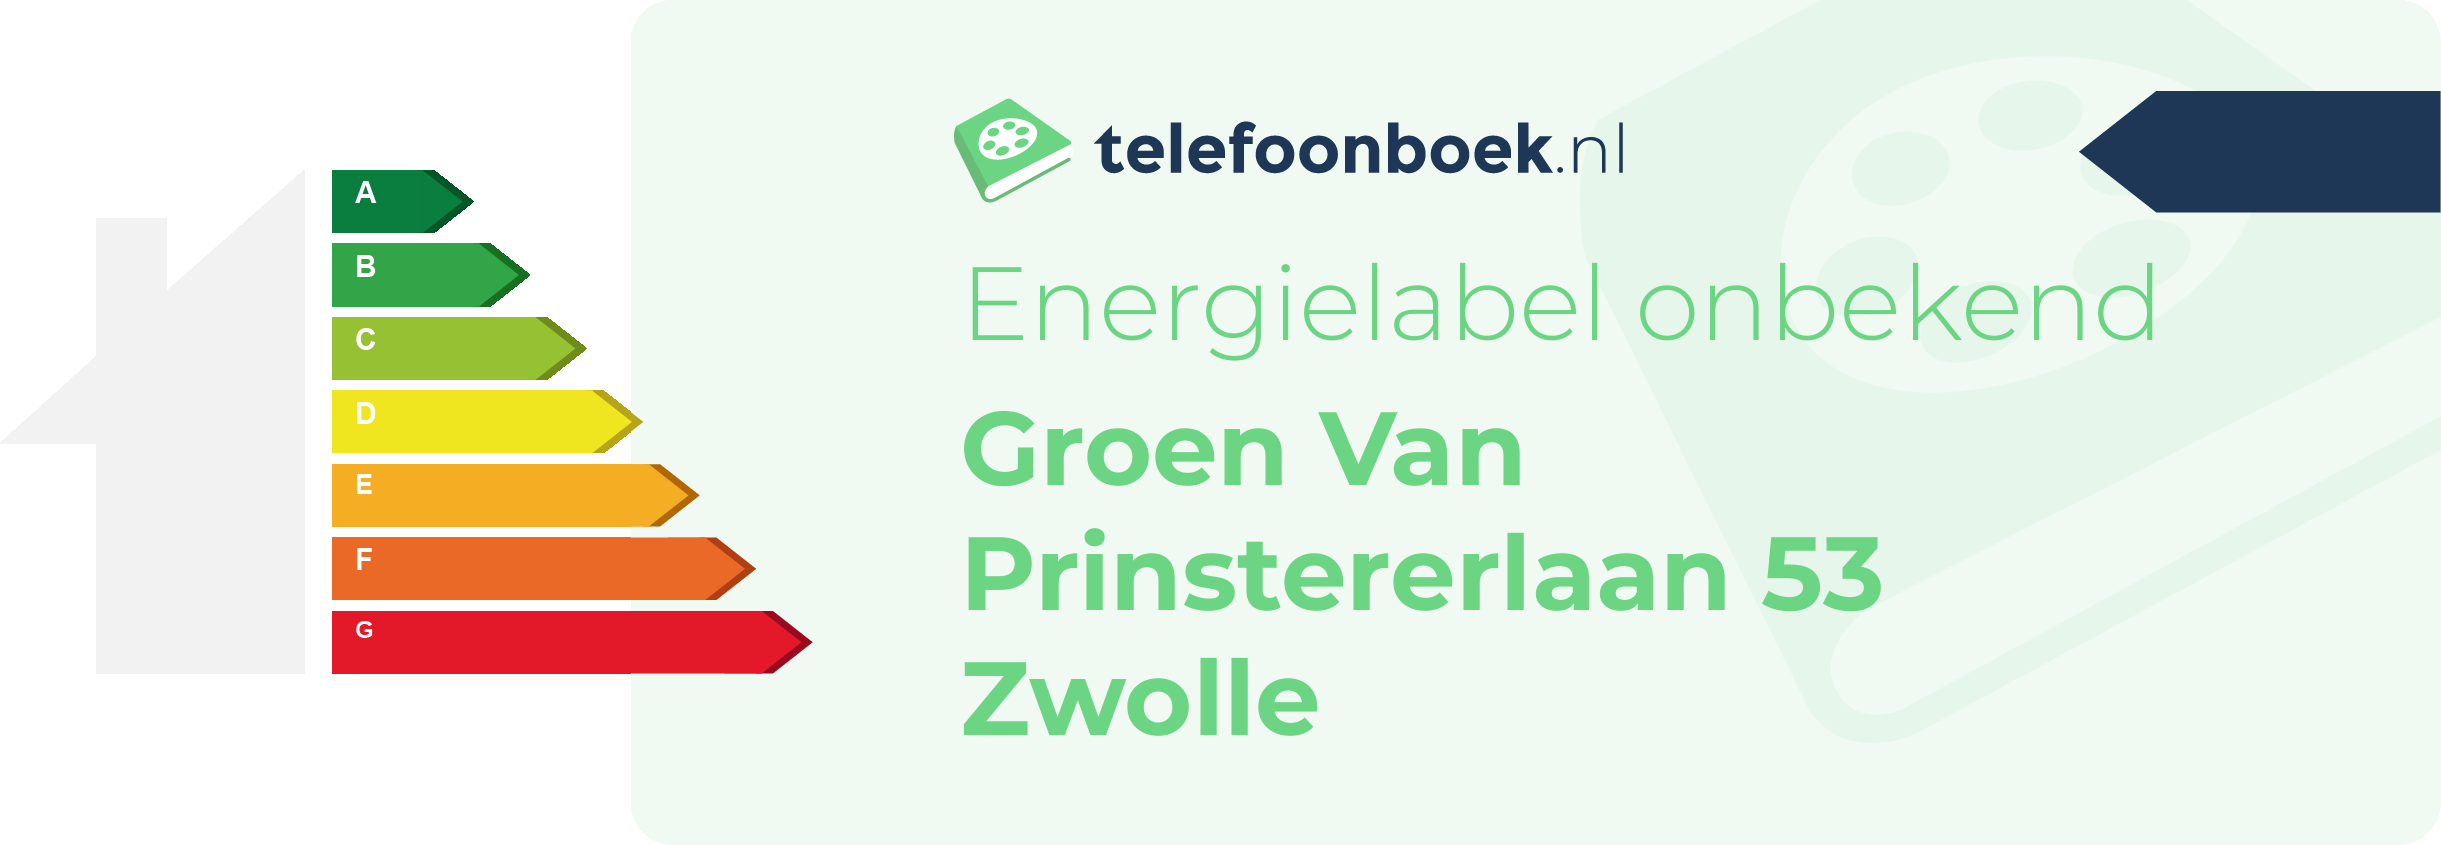 Energielabel Groen Van Prinstererlaan 53 Zwolle